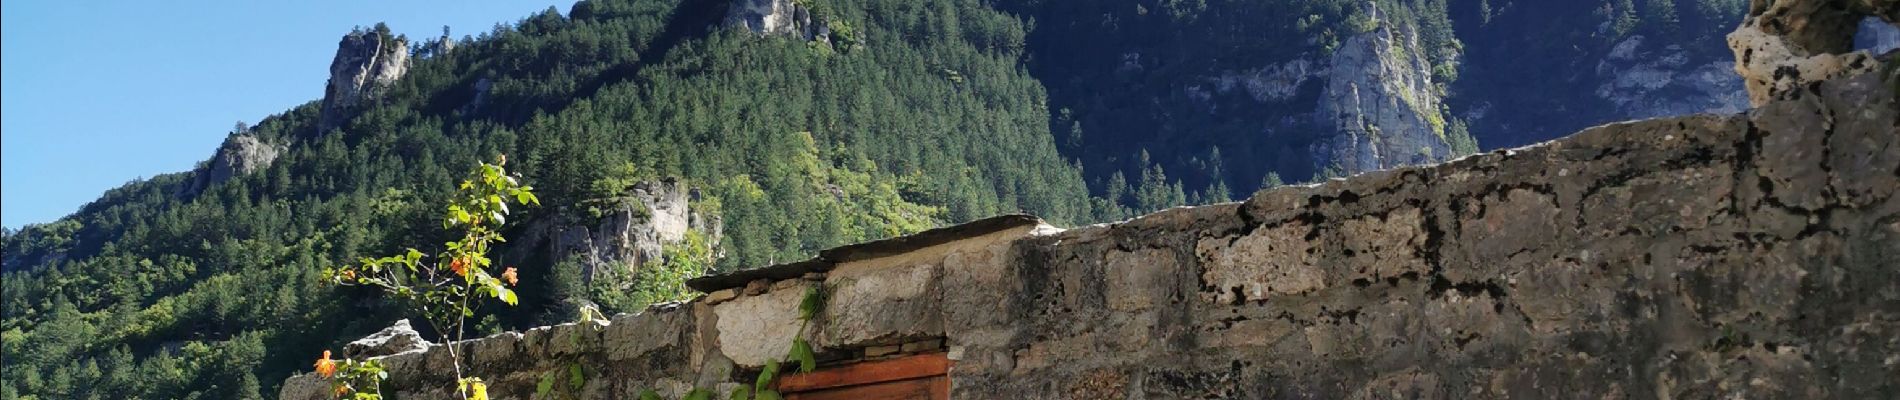 Tocht Trail Gorges du Tarn Causses - descente rando Saint enimie en courant  - Photo